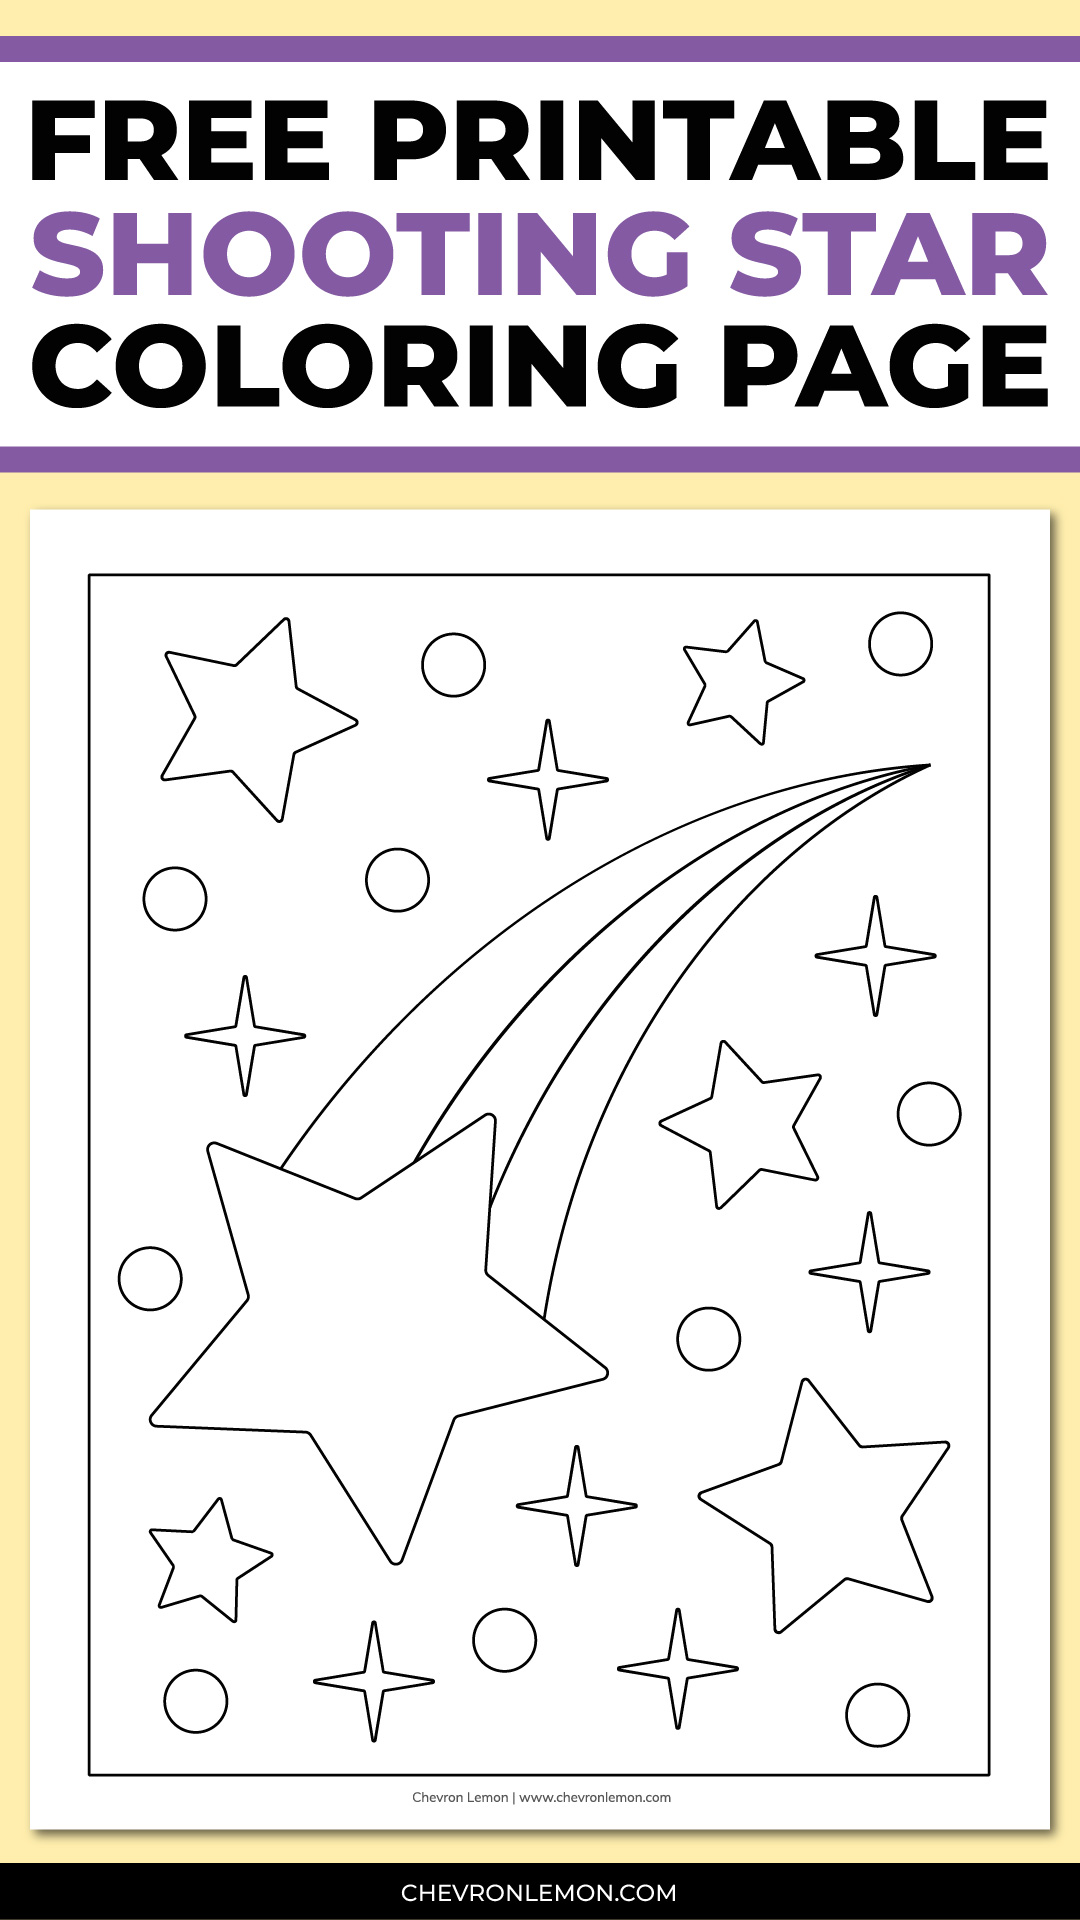 Printable shooting star coloring page